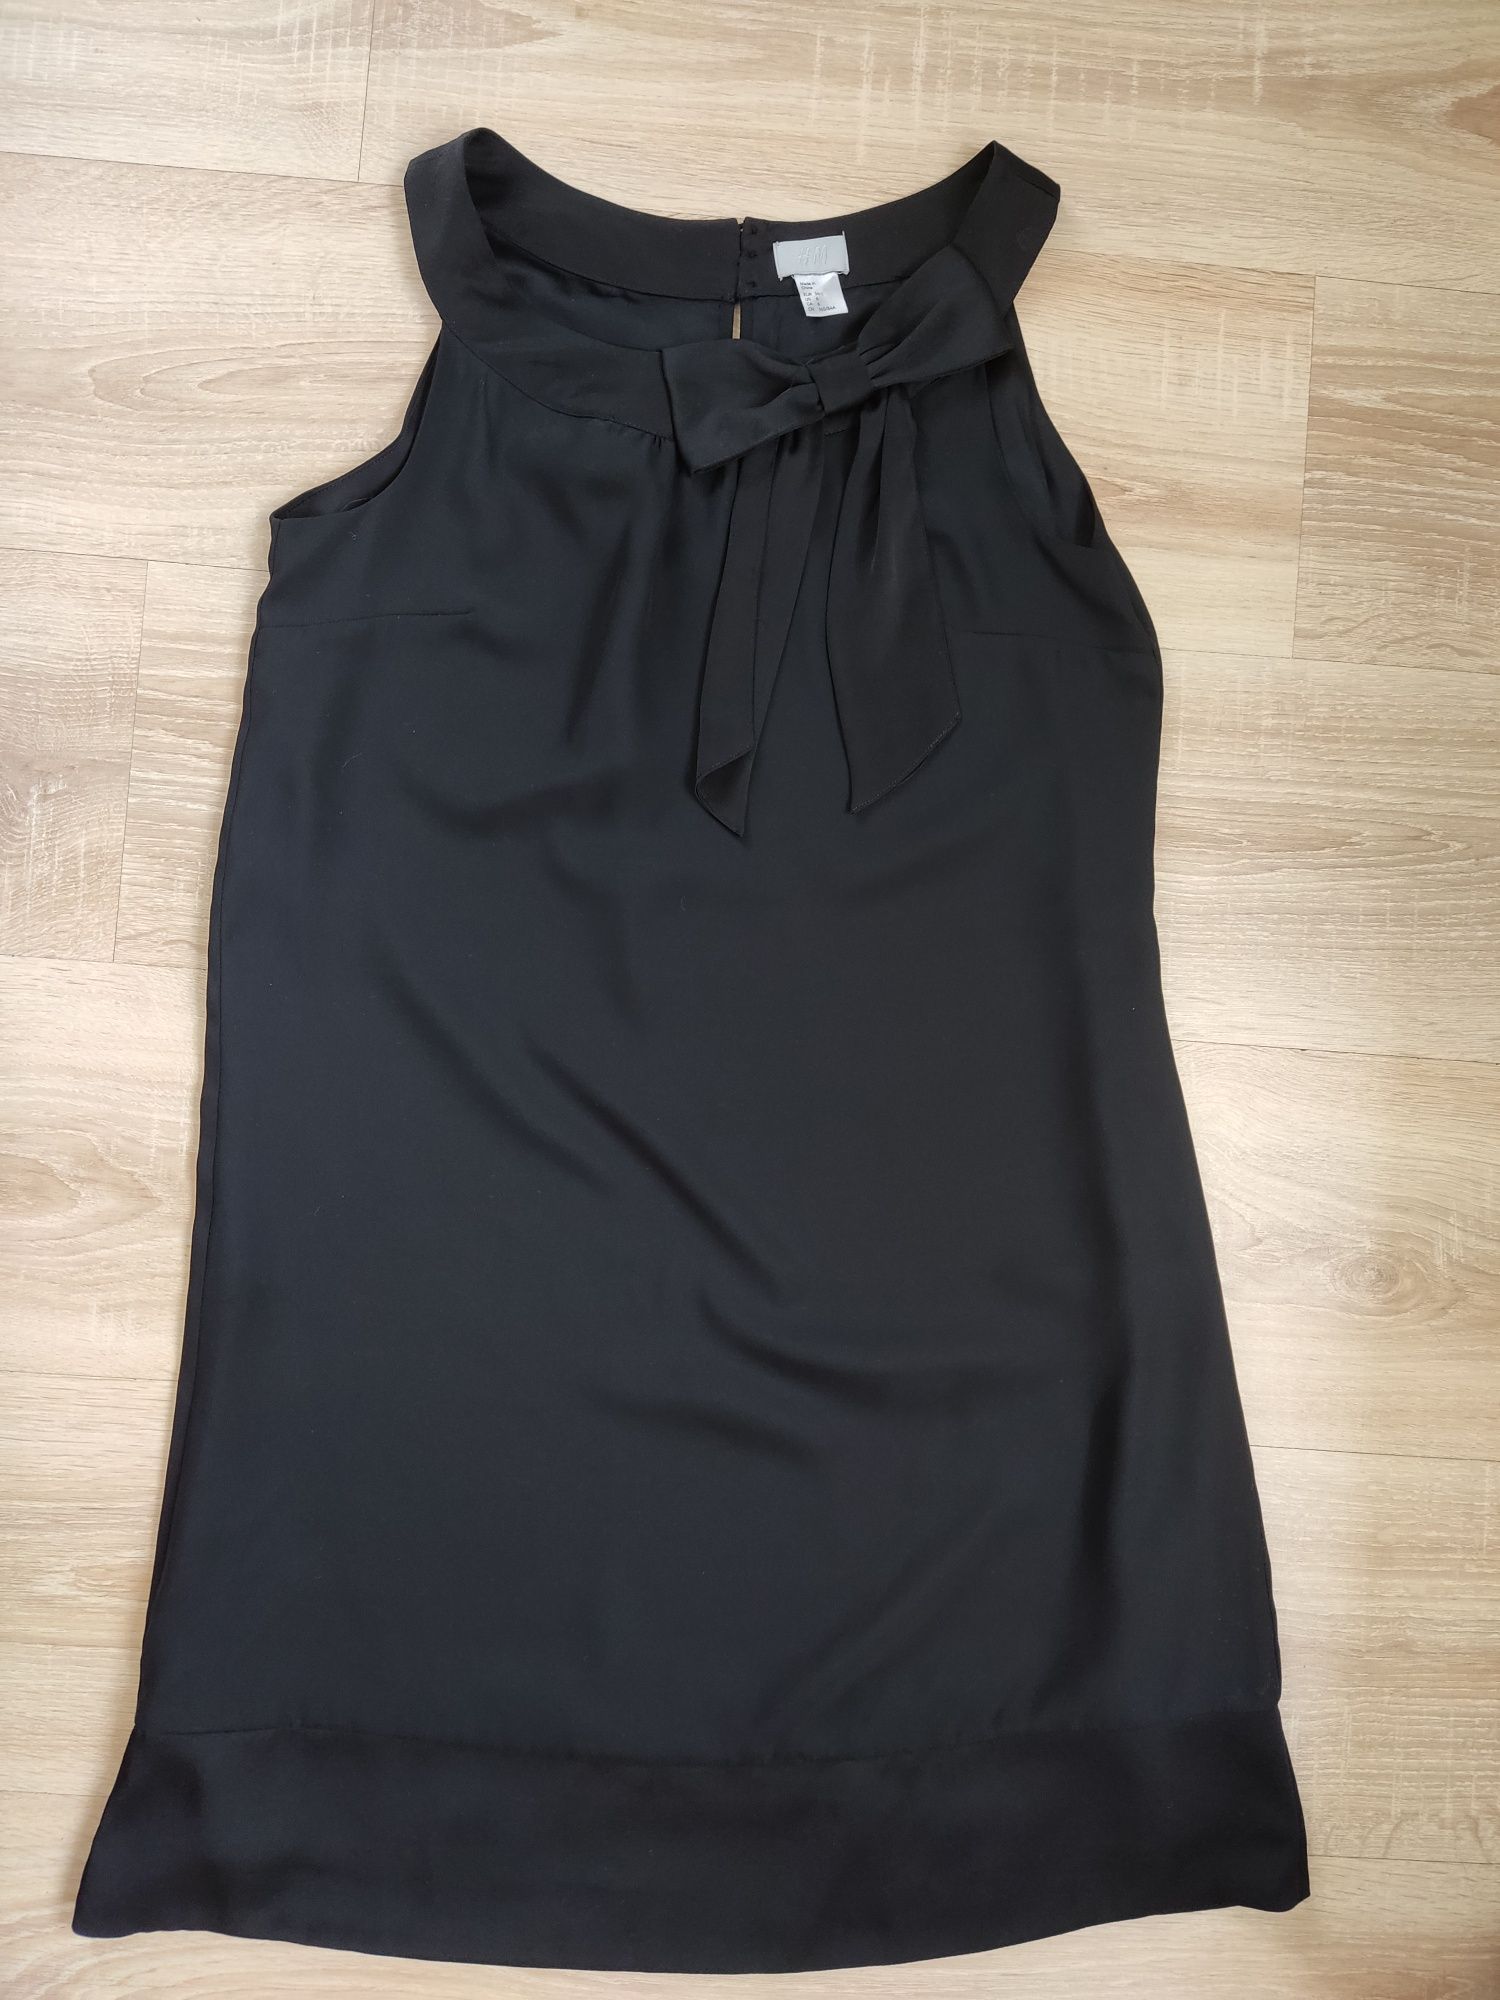 Sukienka czarna H&M 36